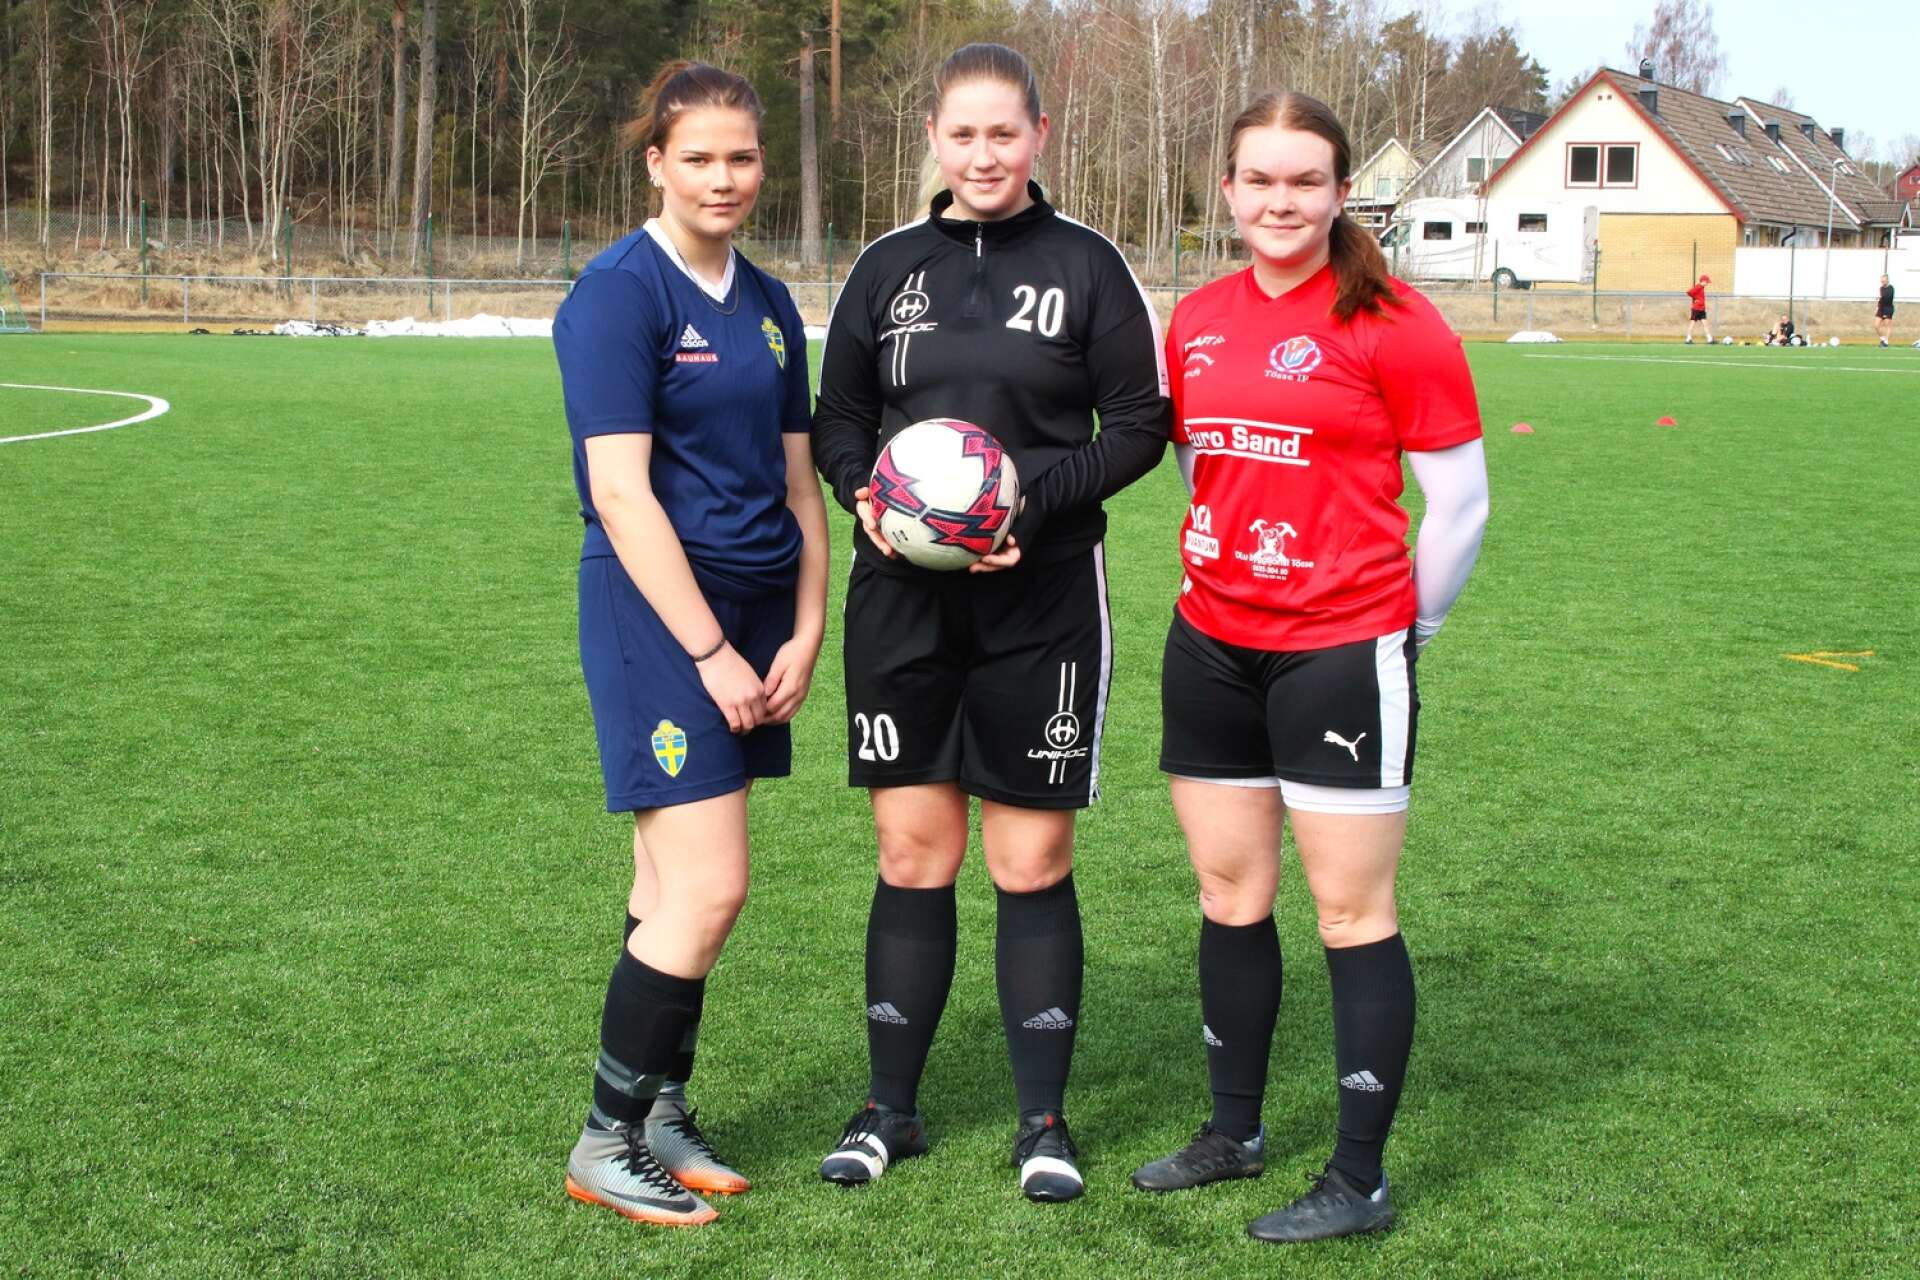 Tuva Eriksson, Sanna Blixt och Wilma Persson tillhör nyckelspelarna i Tösse IF och är redo för söndagens premiär mot Eds FF:s U-lag i division 4 Dalsland.